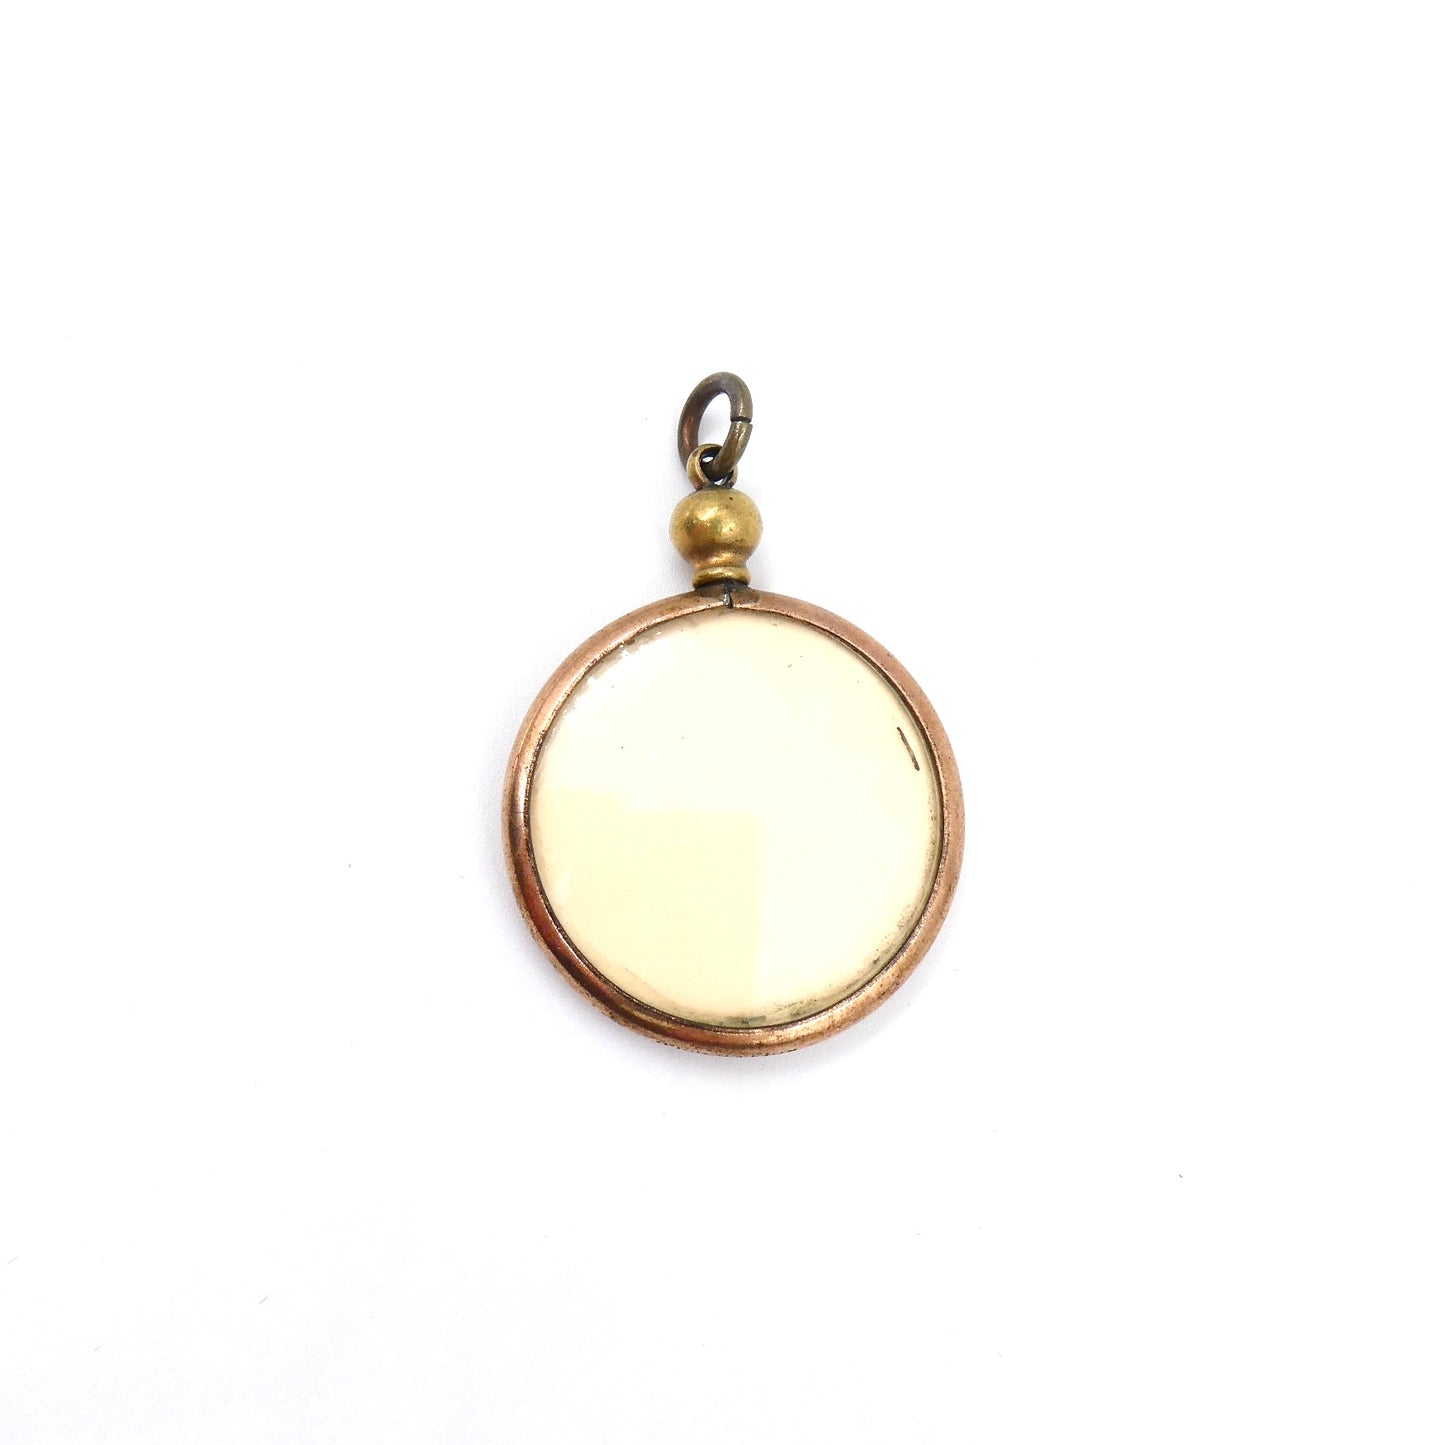 Vintage 9kt gold pendant for two photographs, vintage photo frame necklace, ideal vintage memory gift.